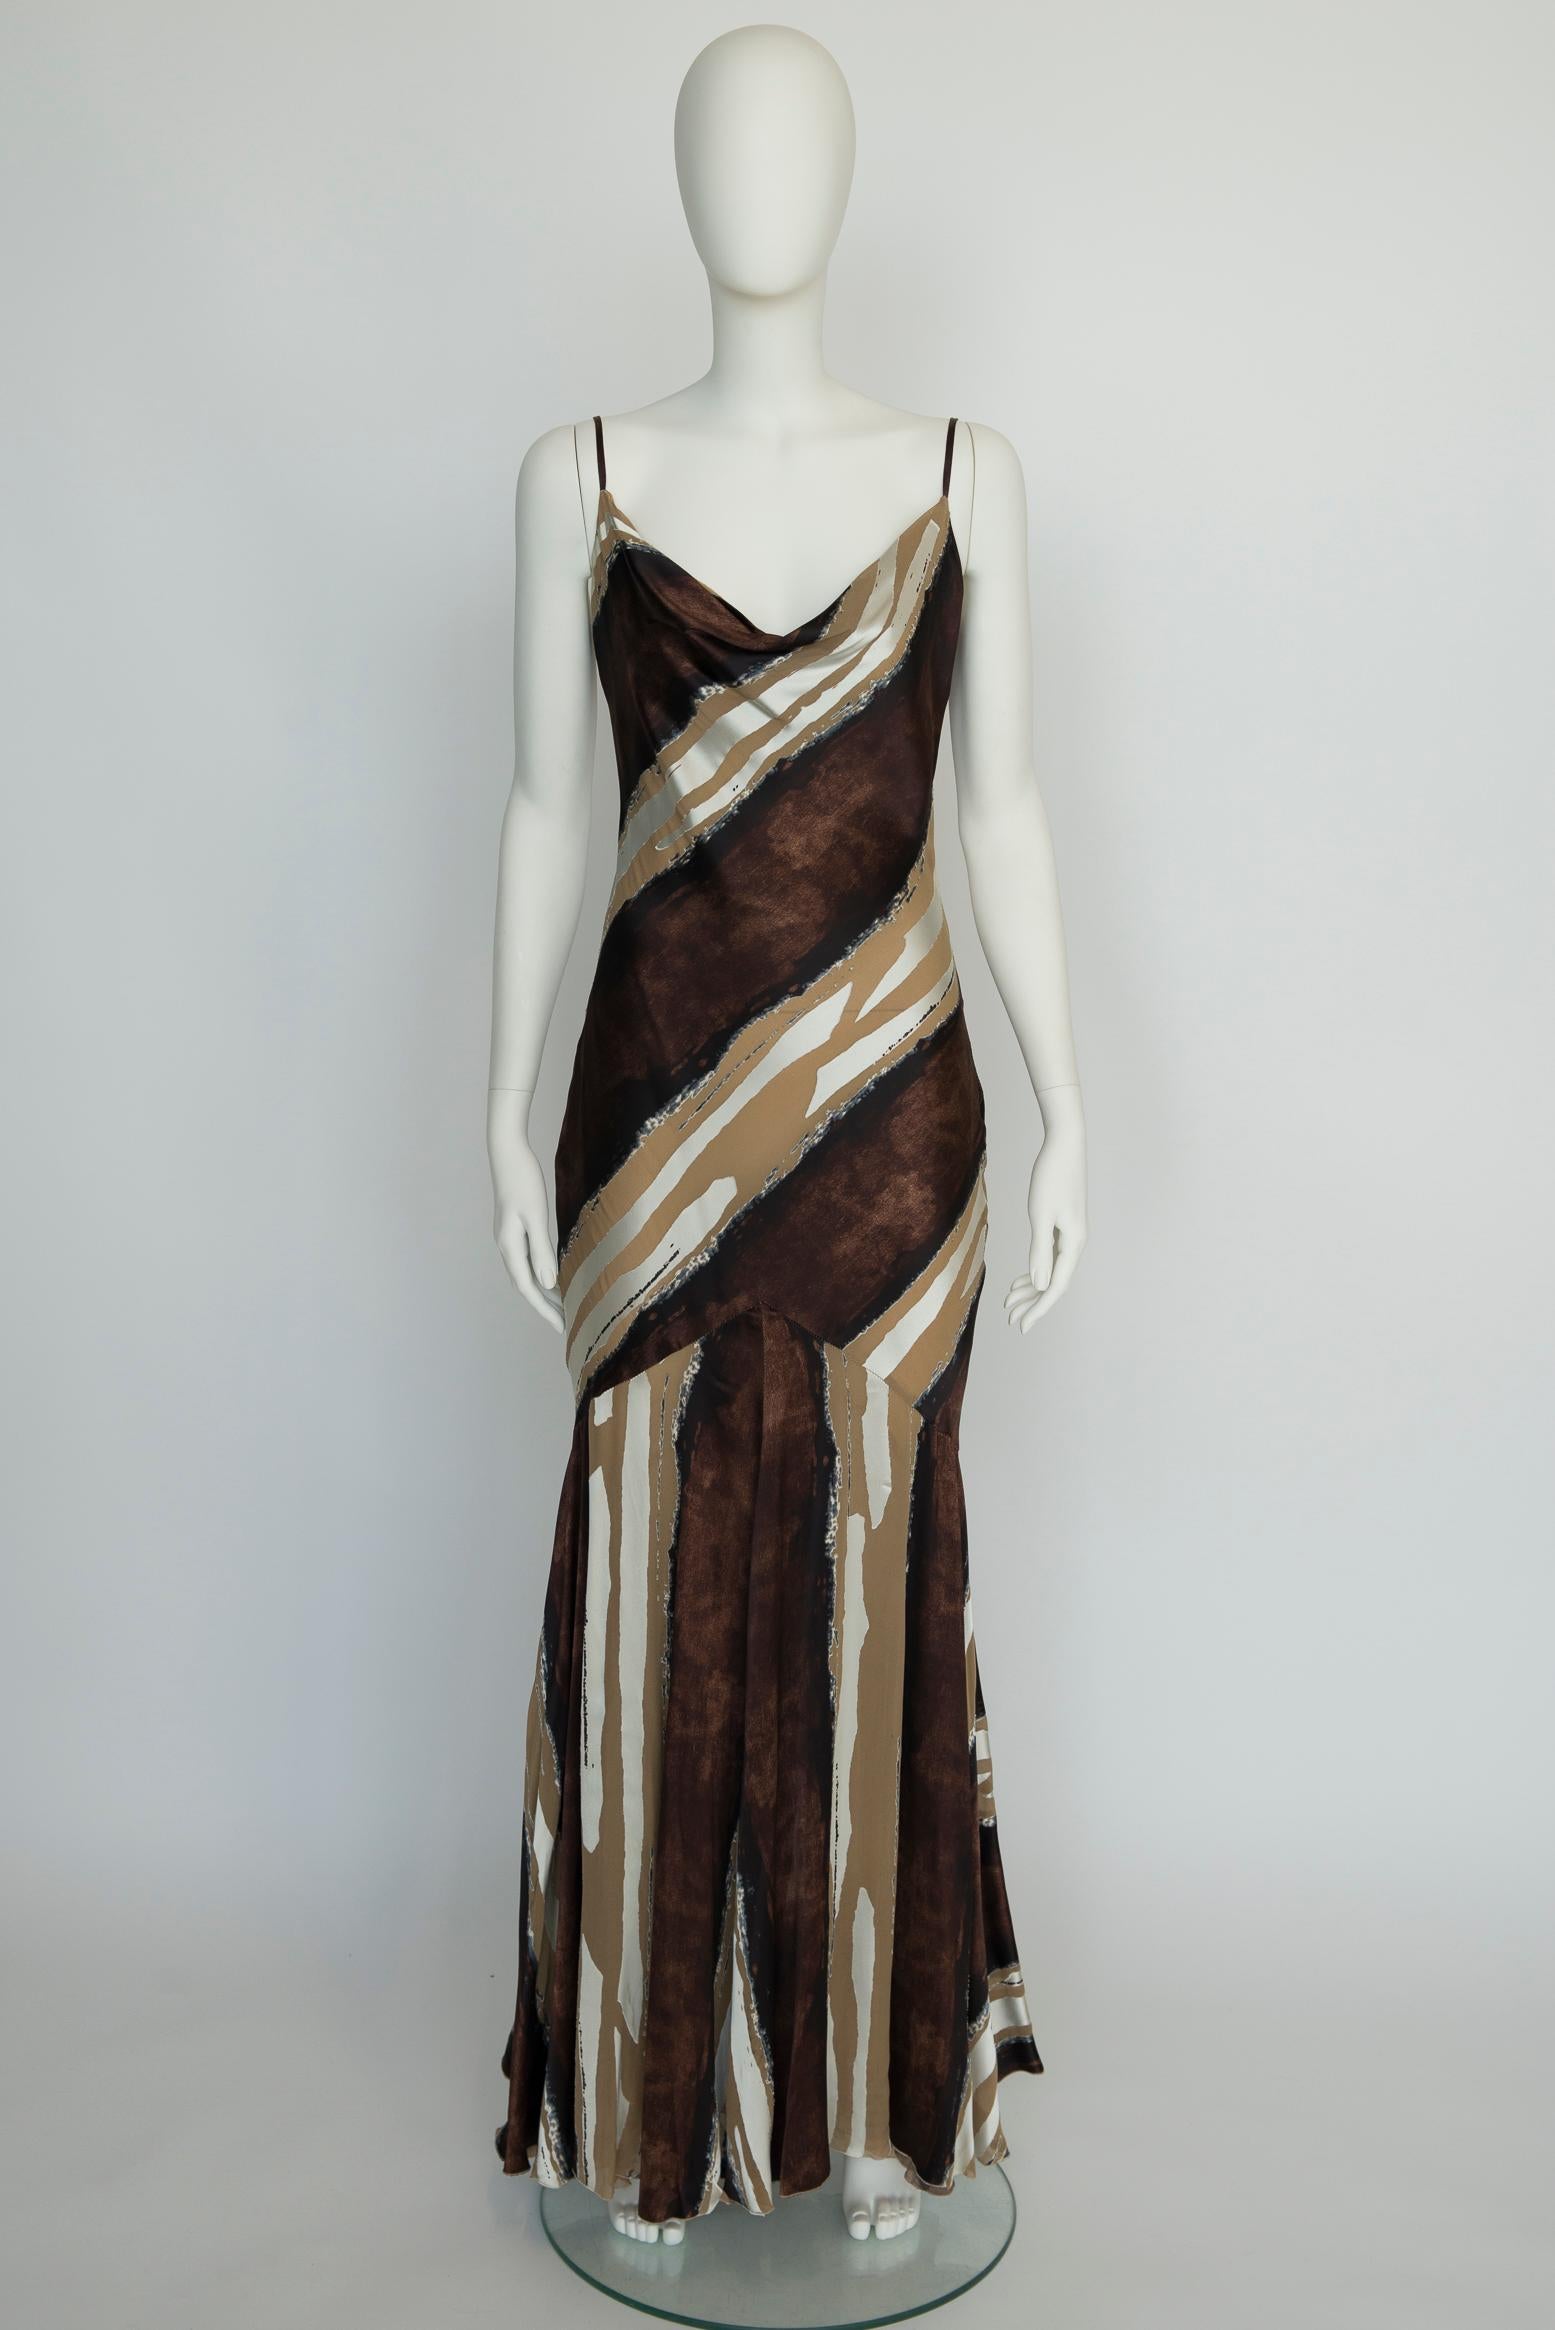 Suspendue par de délicates bretelles spaghetti, cette robe de soirée Roberto Cavalli des années 90 est coupée dans le biais - une technique qui permet de créer une belle silhouette. Fabriqué à partir de satin de soie 